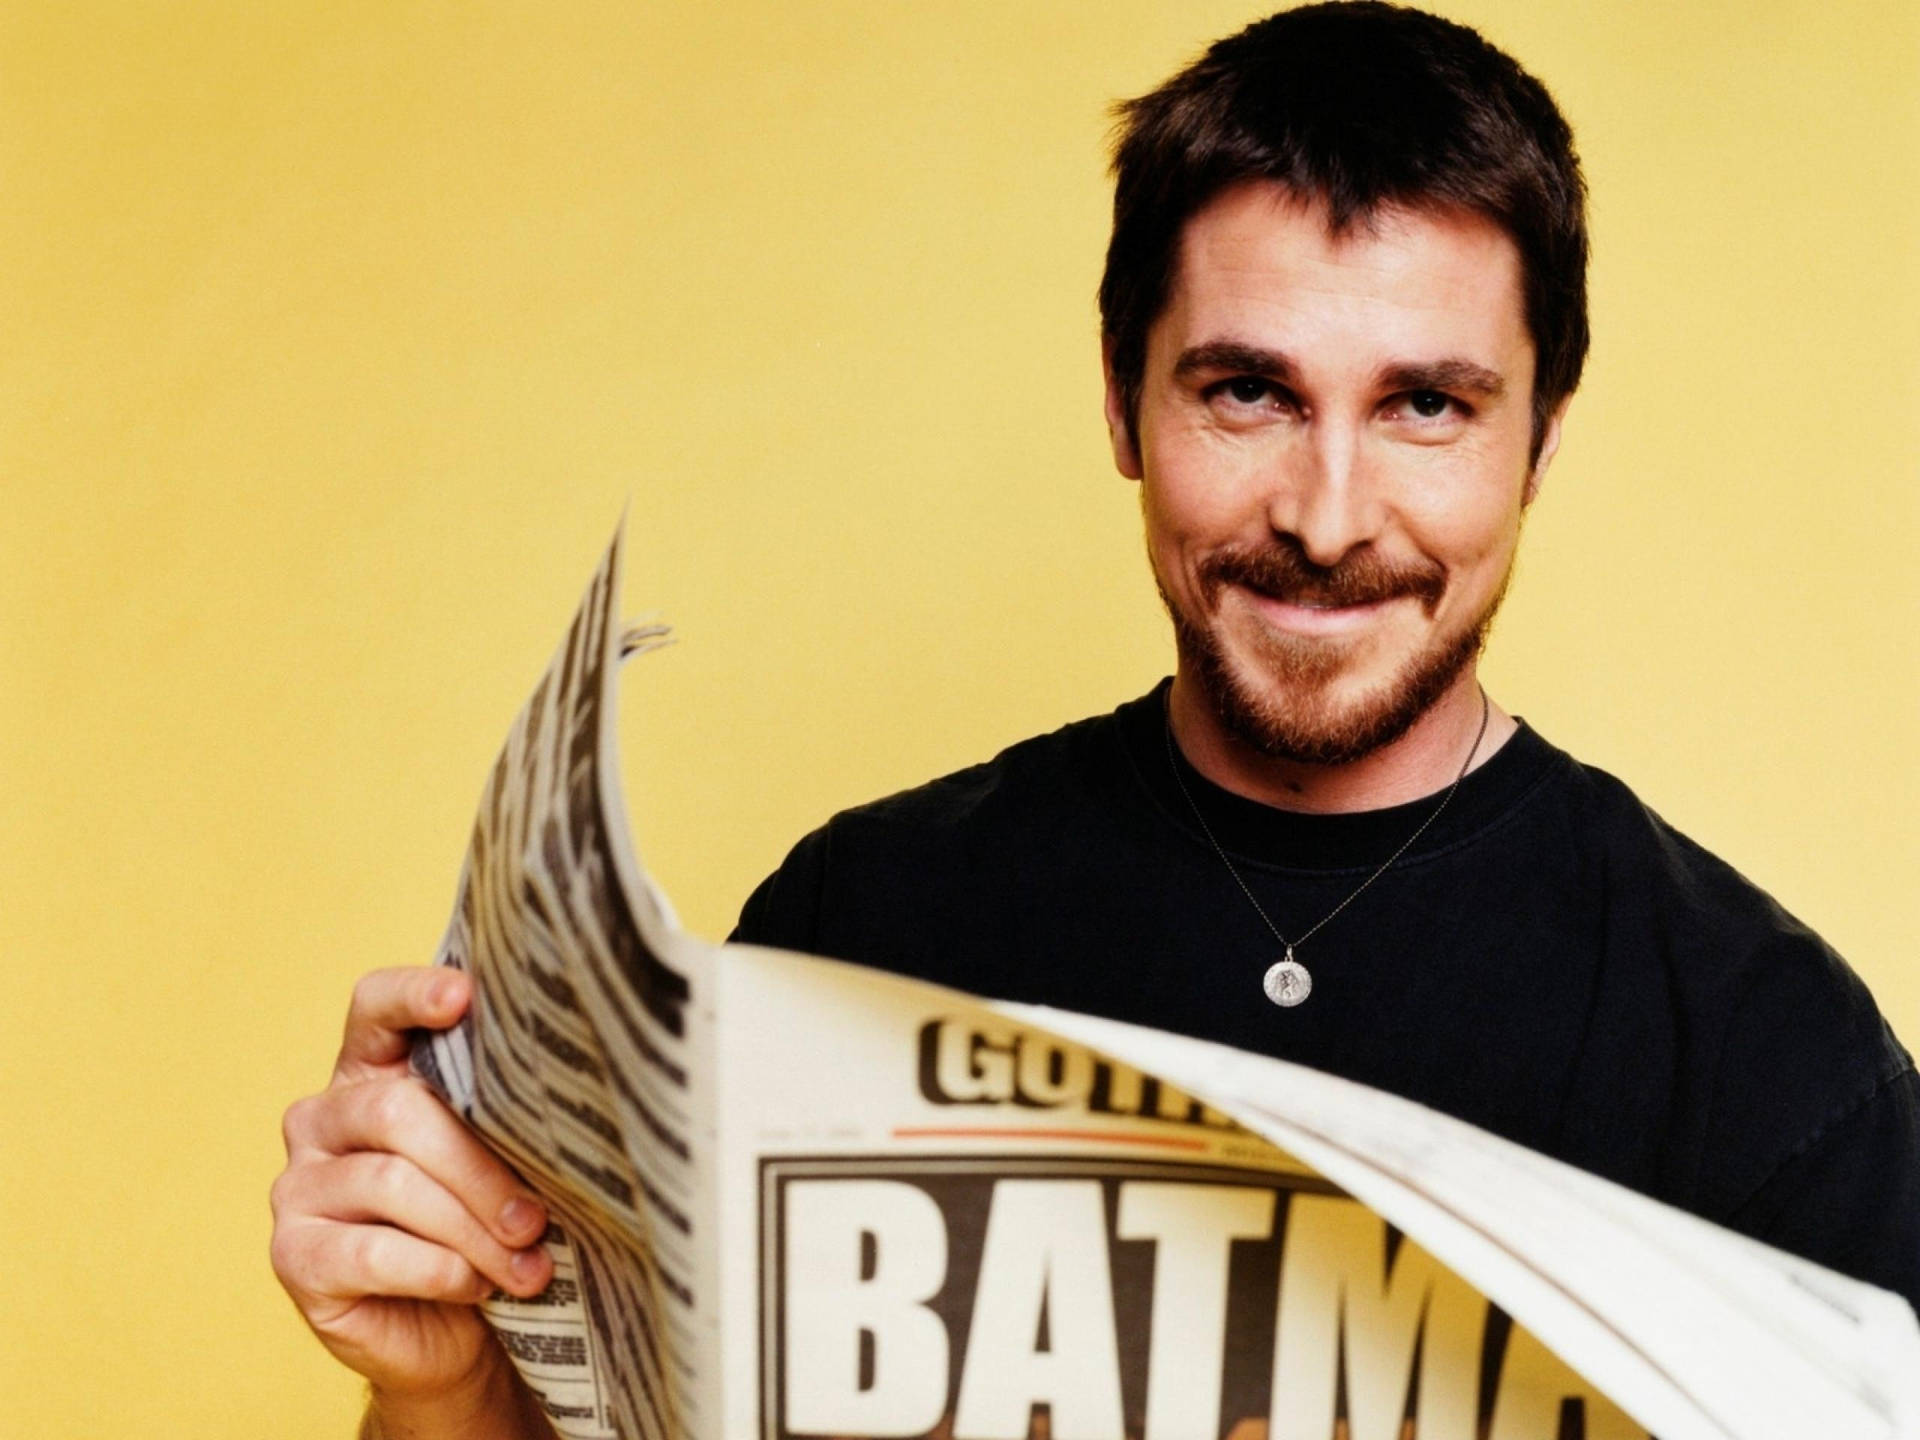 Christian Bale Photoshoot Background